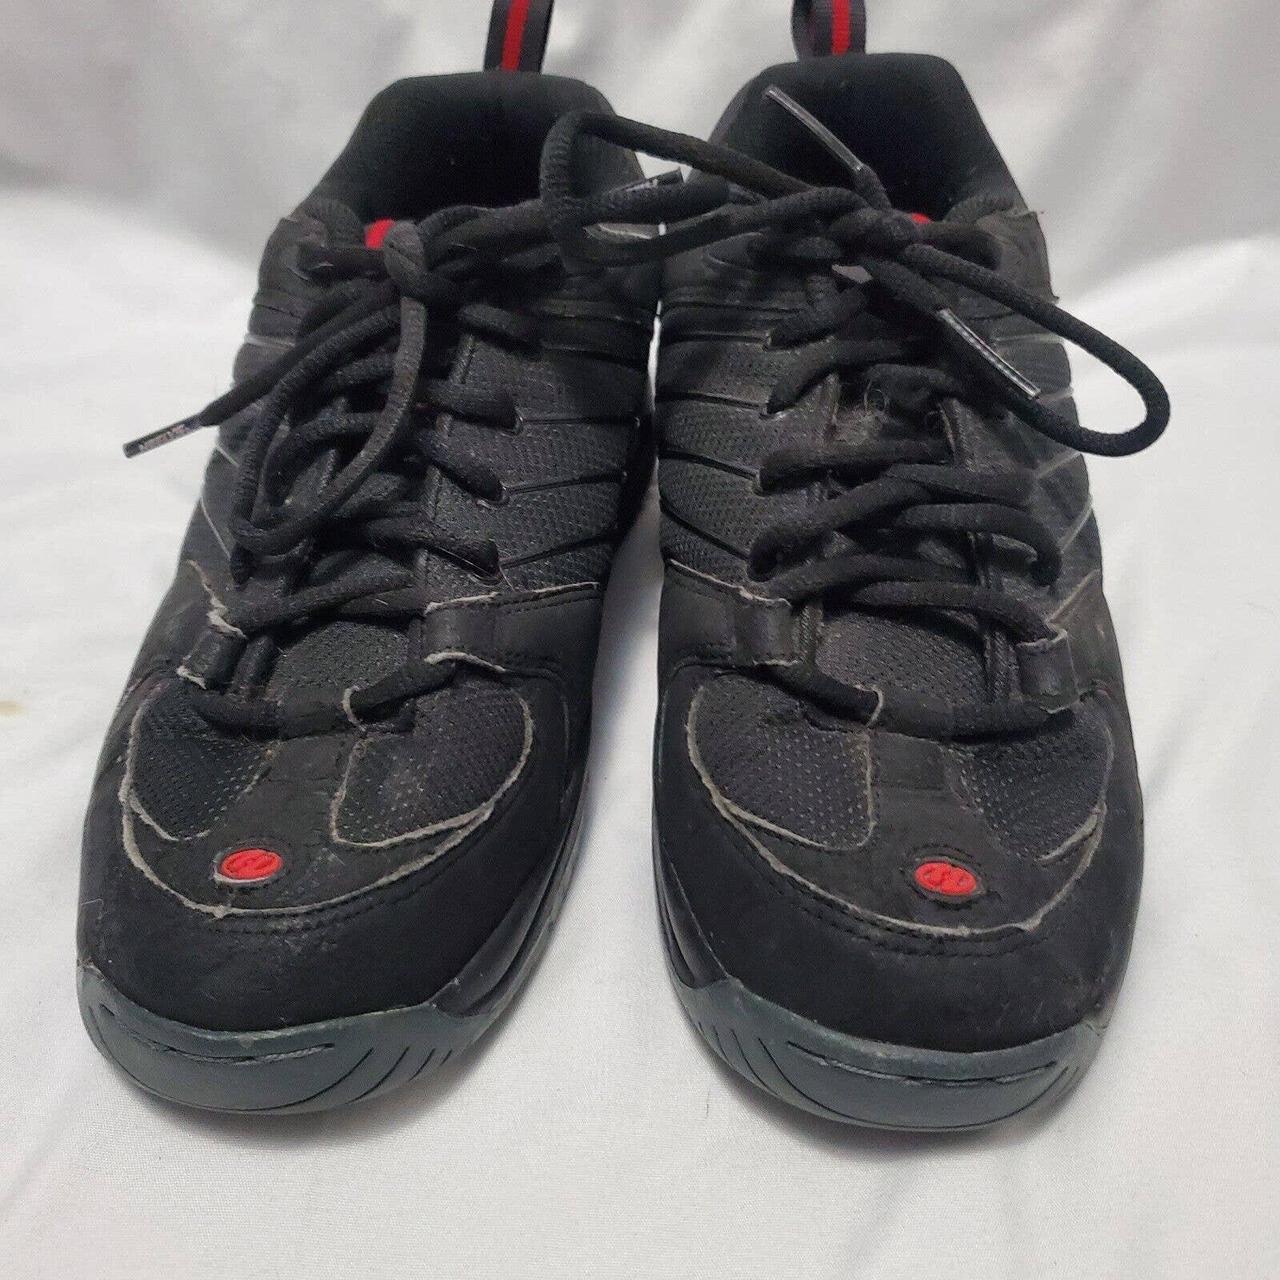 Heelys Mens Size 9 Black Red Skate Rolling Shoes... - Depop